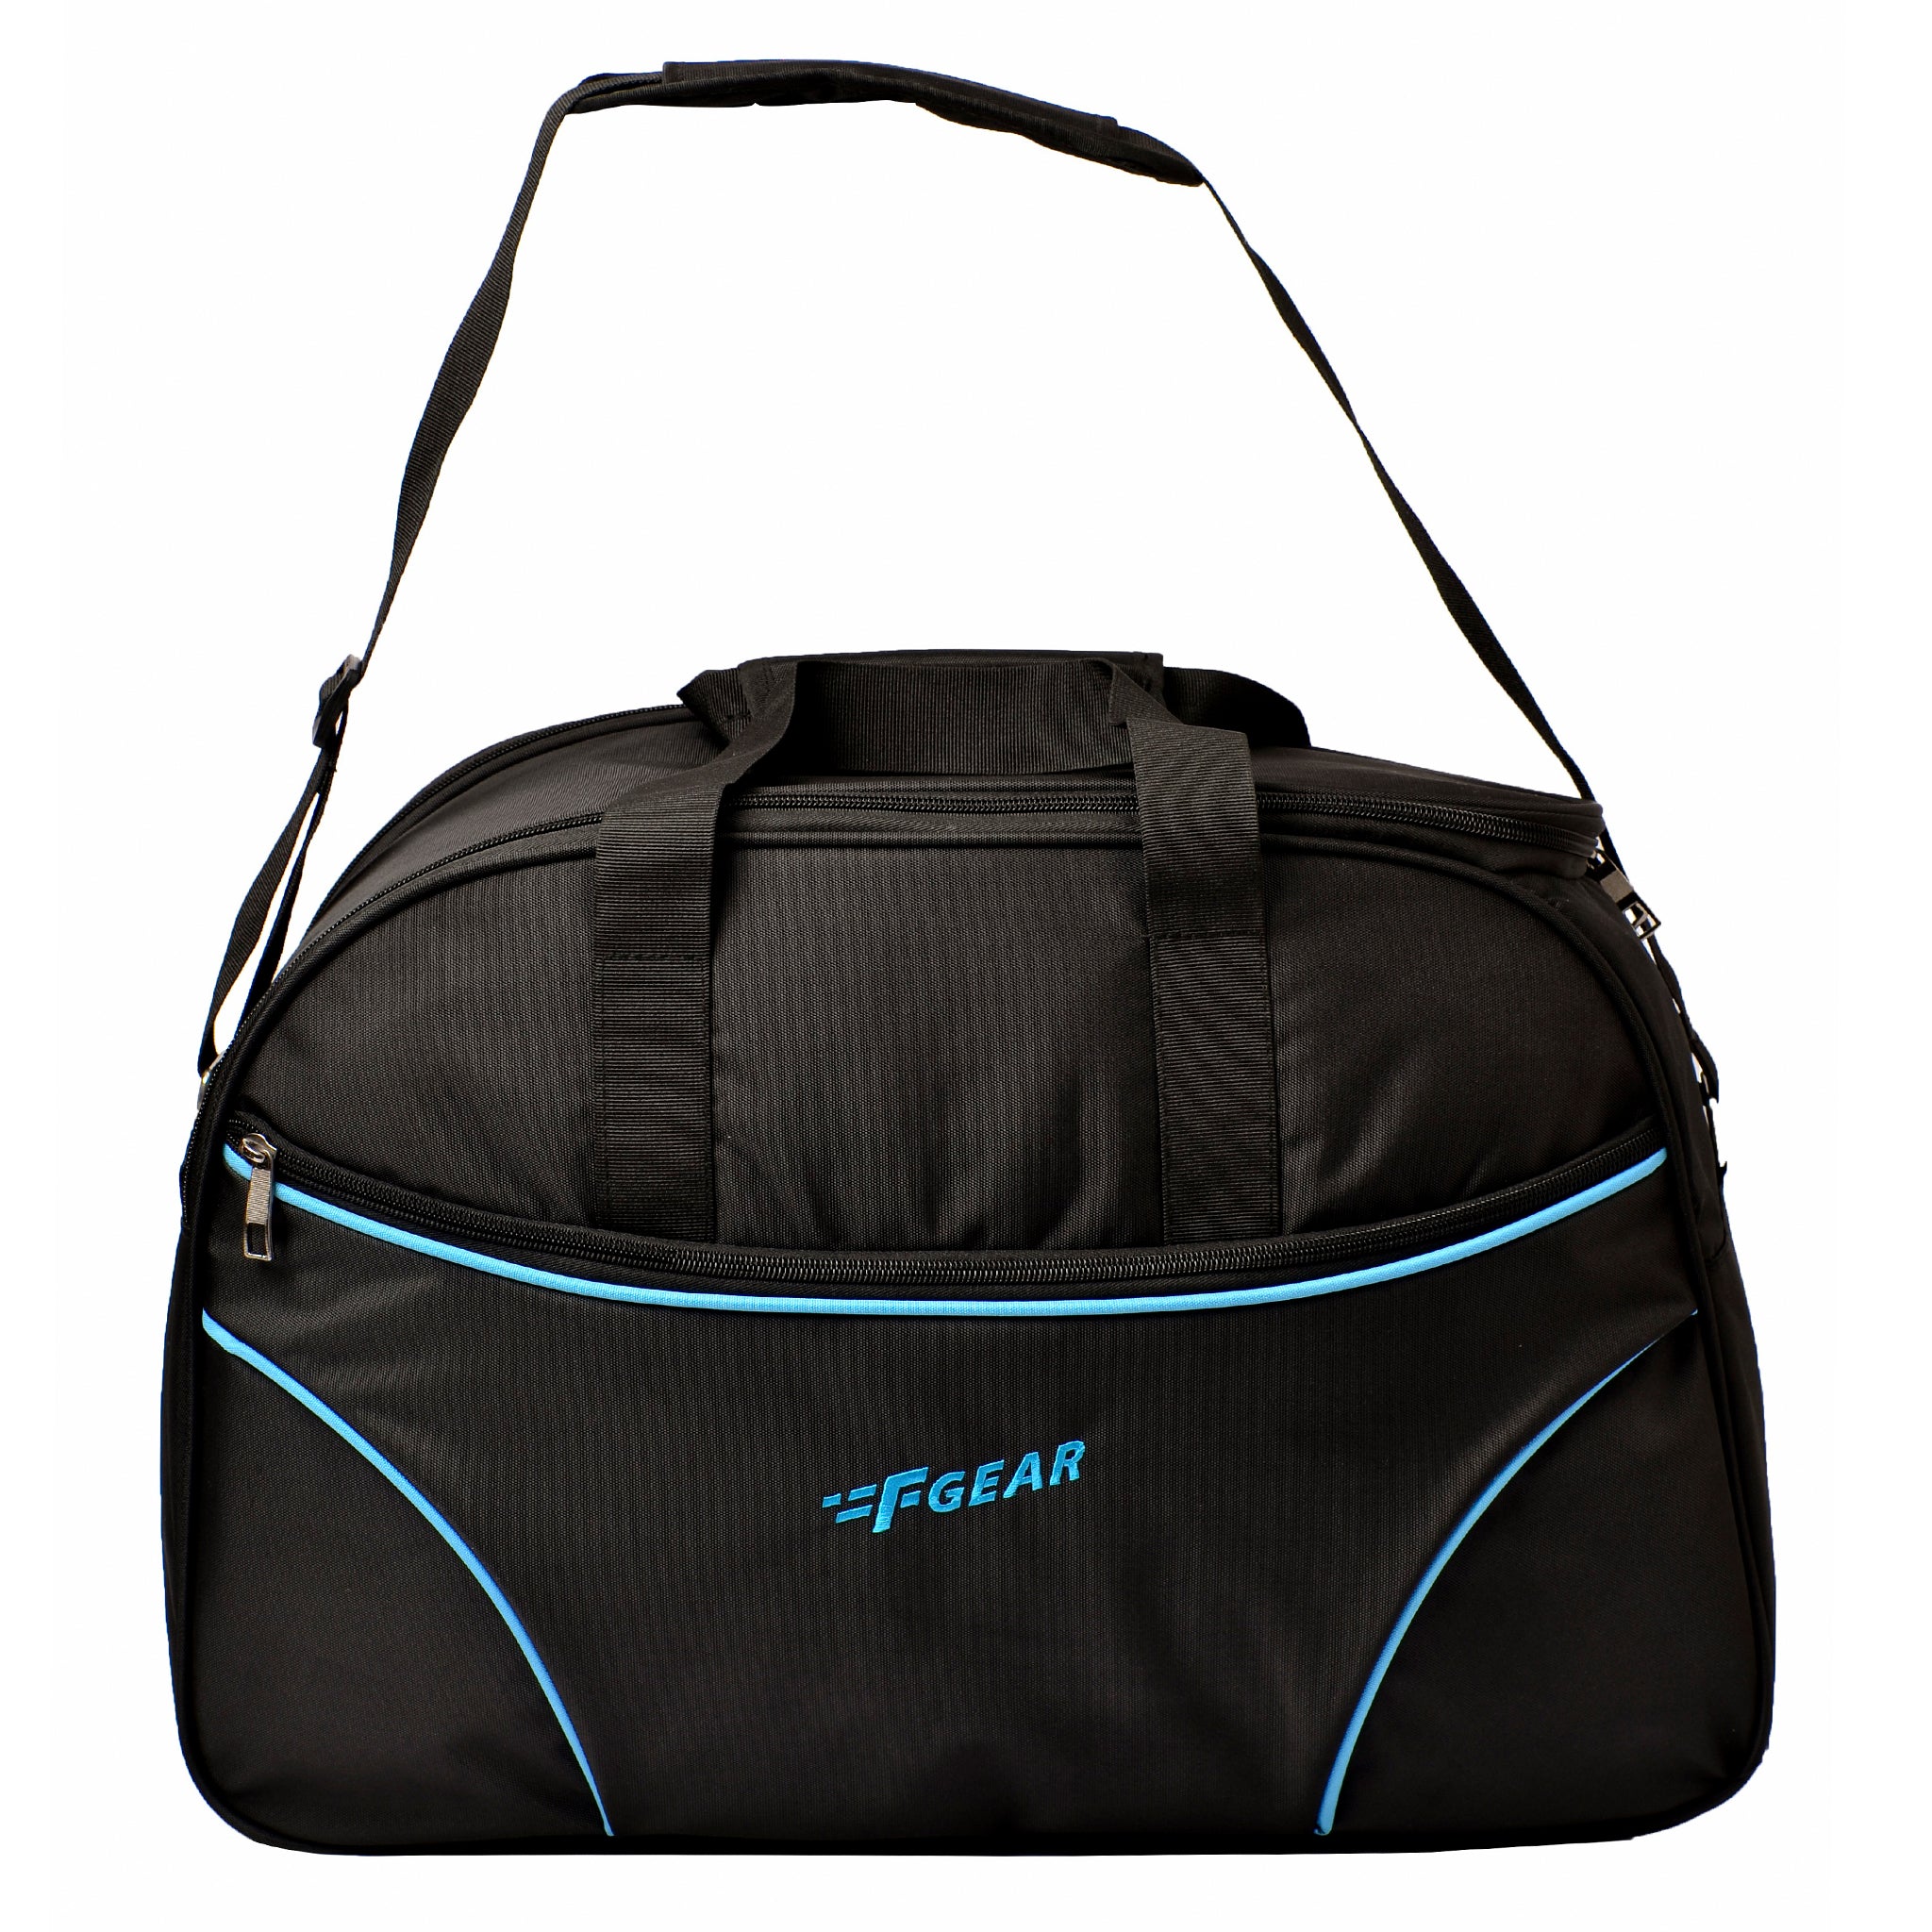 Designer Travel Black Duffle Bag | Corporate bag